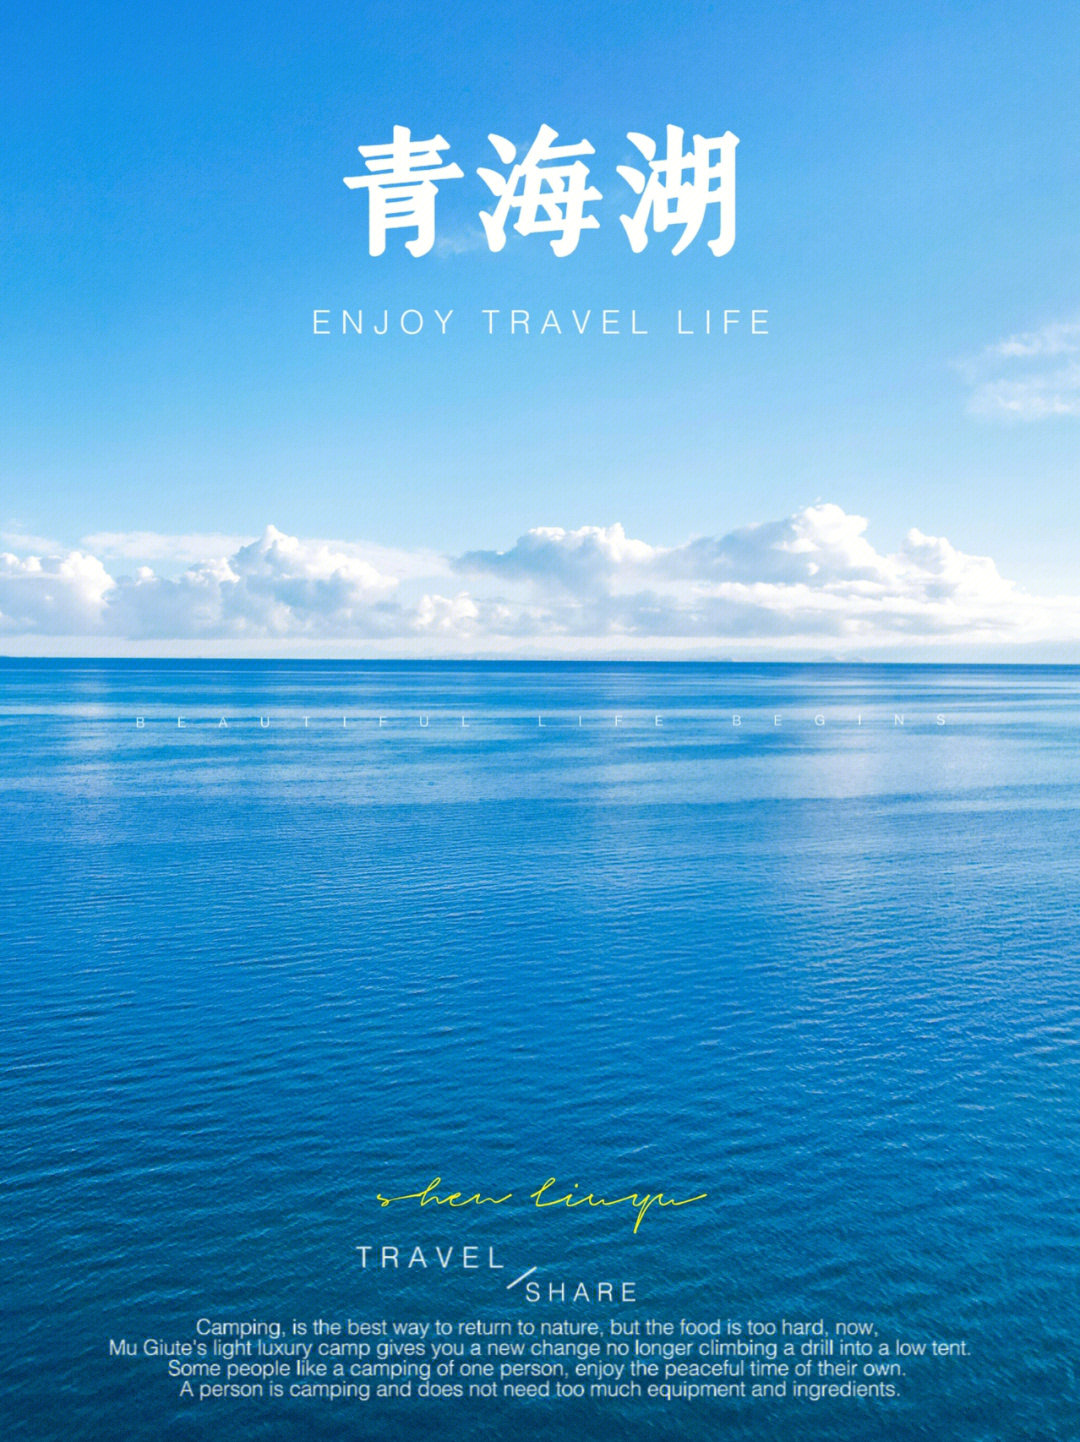 夏天一定要来这看一次碧海蓝天青海湖